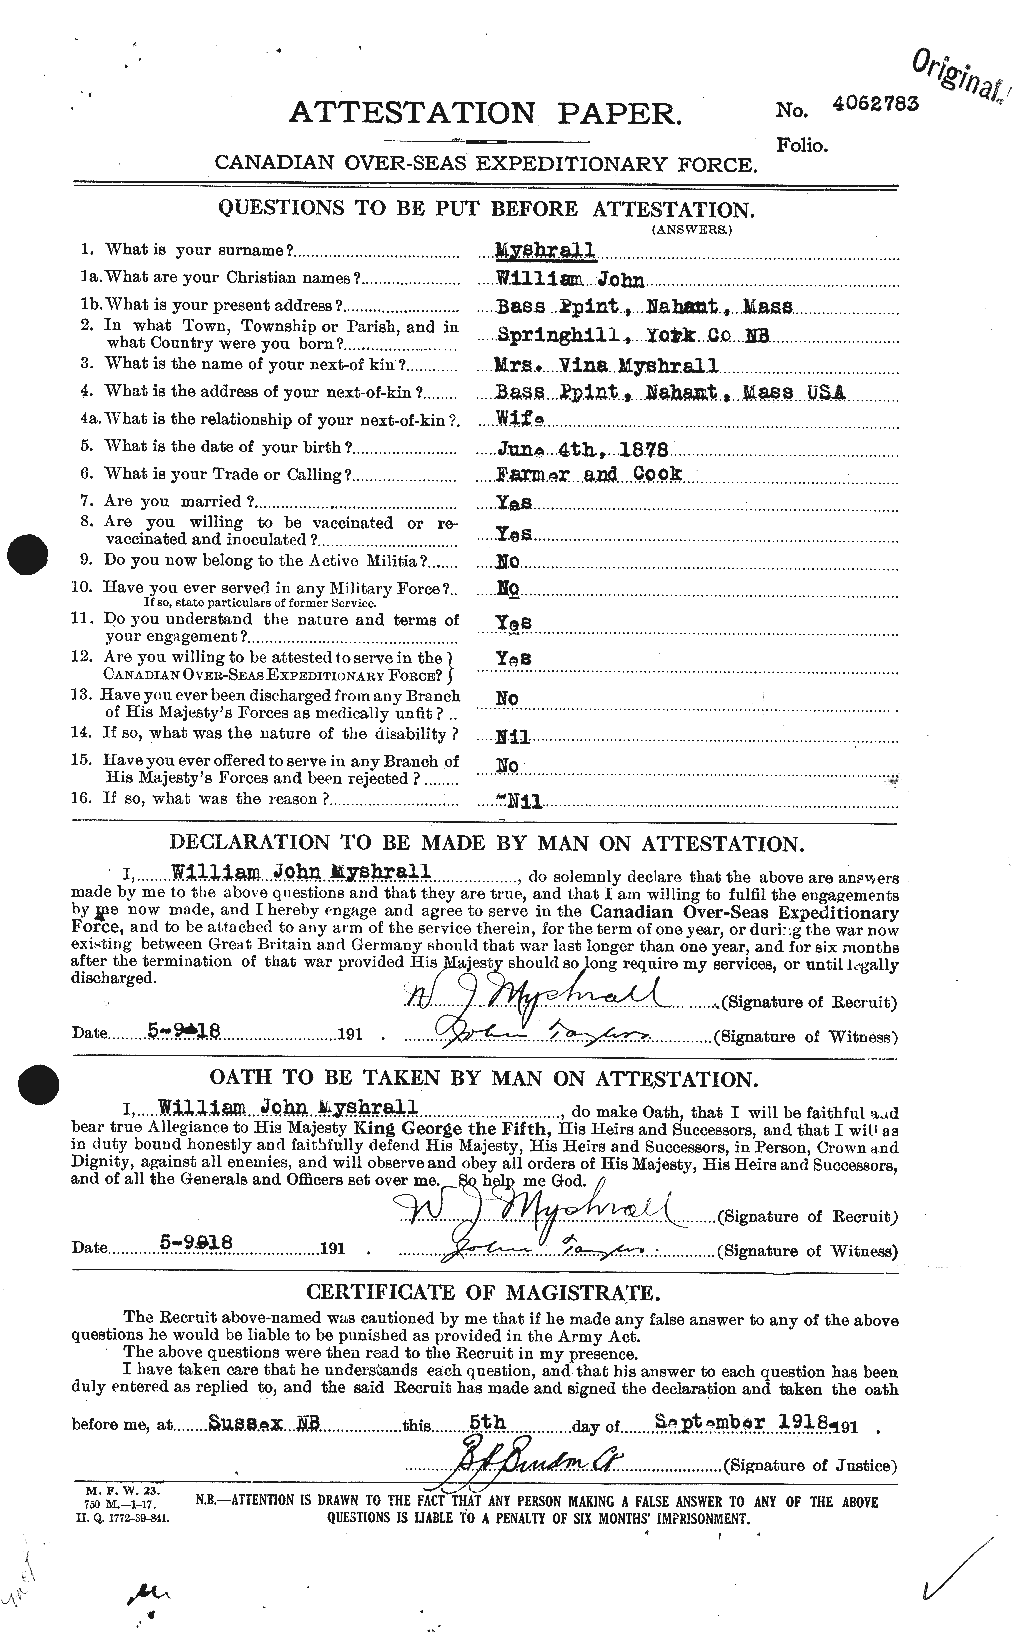 Dossiers du Personnel de la Première Guerre mondiale - CEC 518056a